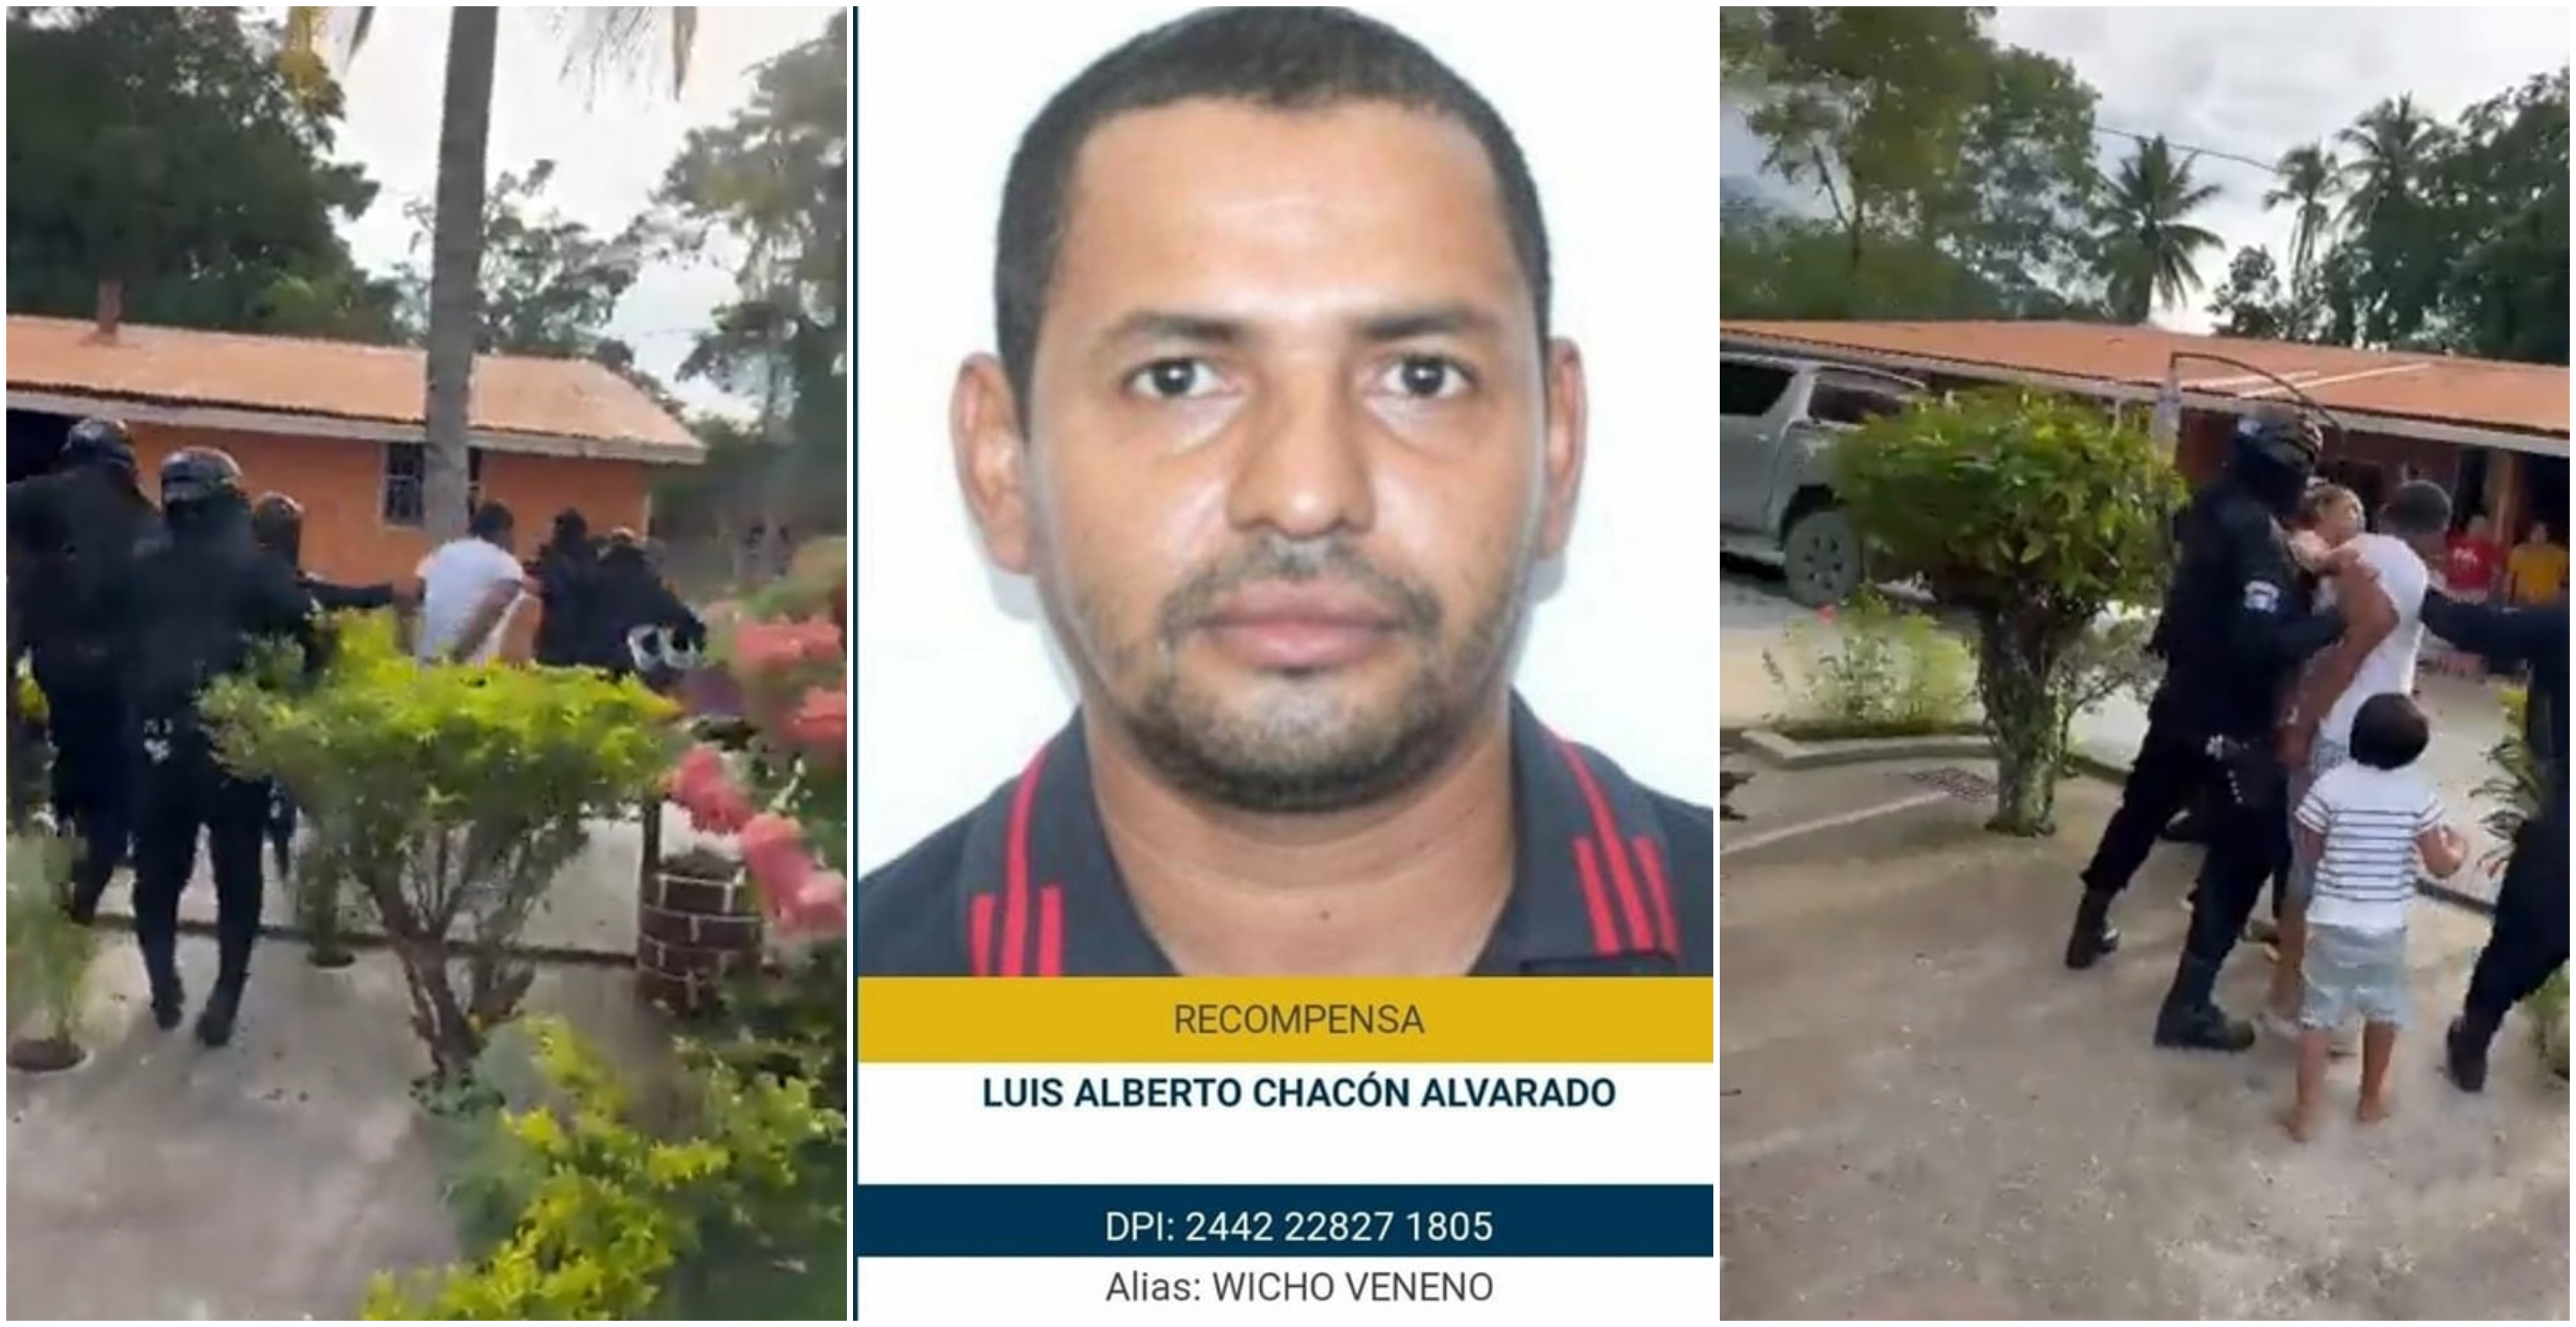 Autoridades confirman la muerte de Luis Alberto Chacón Alvarado, alias Wicho Veneno, tras haber sido secuestrado por comando armado que se hizo pasar por agentes de PNC. (Foto Prensa Libre: Hemeroteca PL).